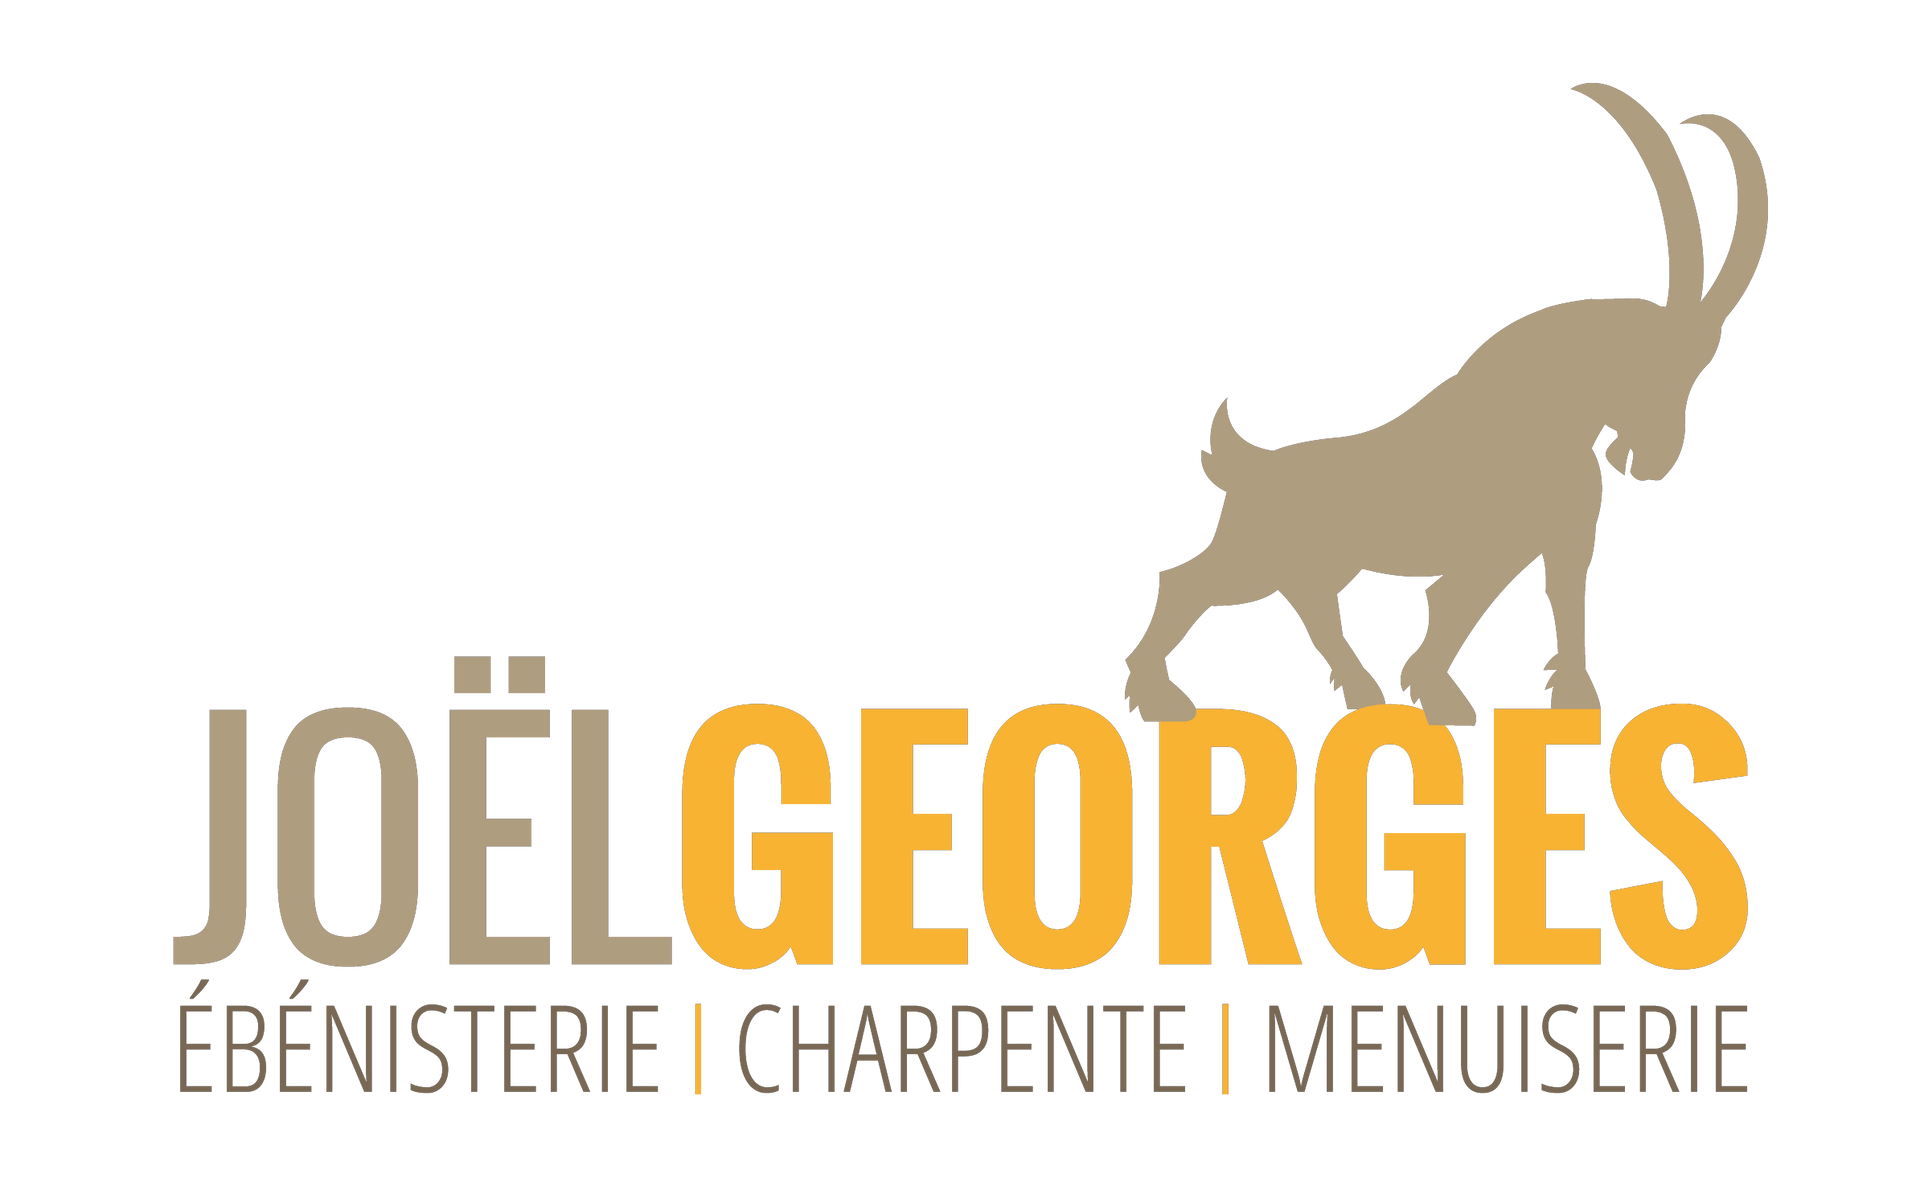 Ébénisterie - Charpente - Menuiserie - Joël Georges